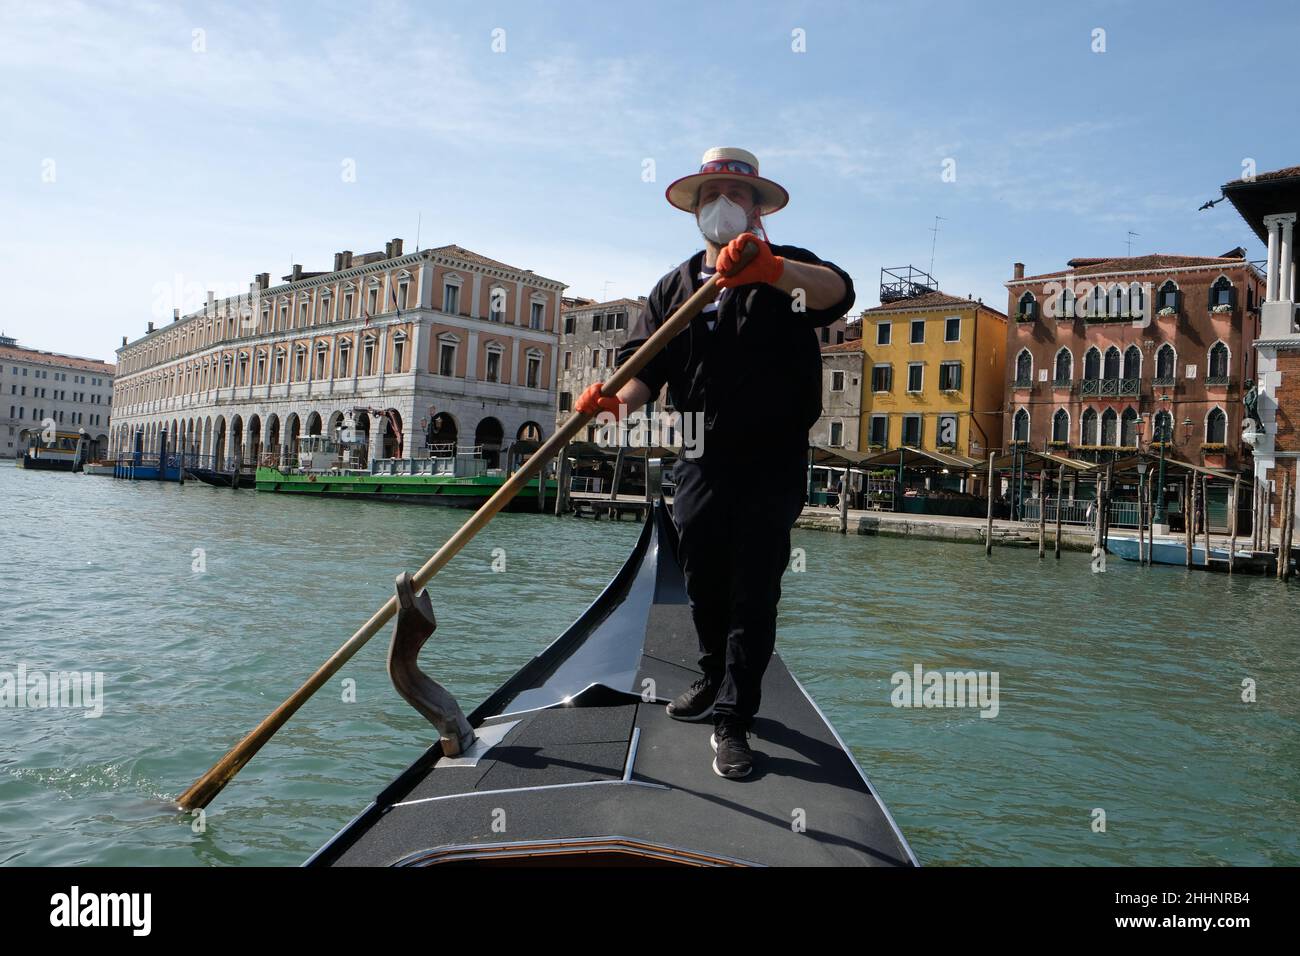 Il gondoliere sta remando durante un traghetto nel grande canale di venezia, 18 maggio 2020. Foto Stock